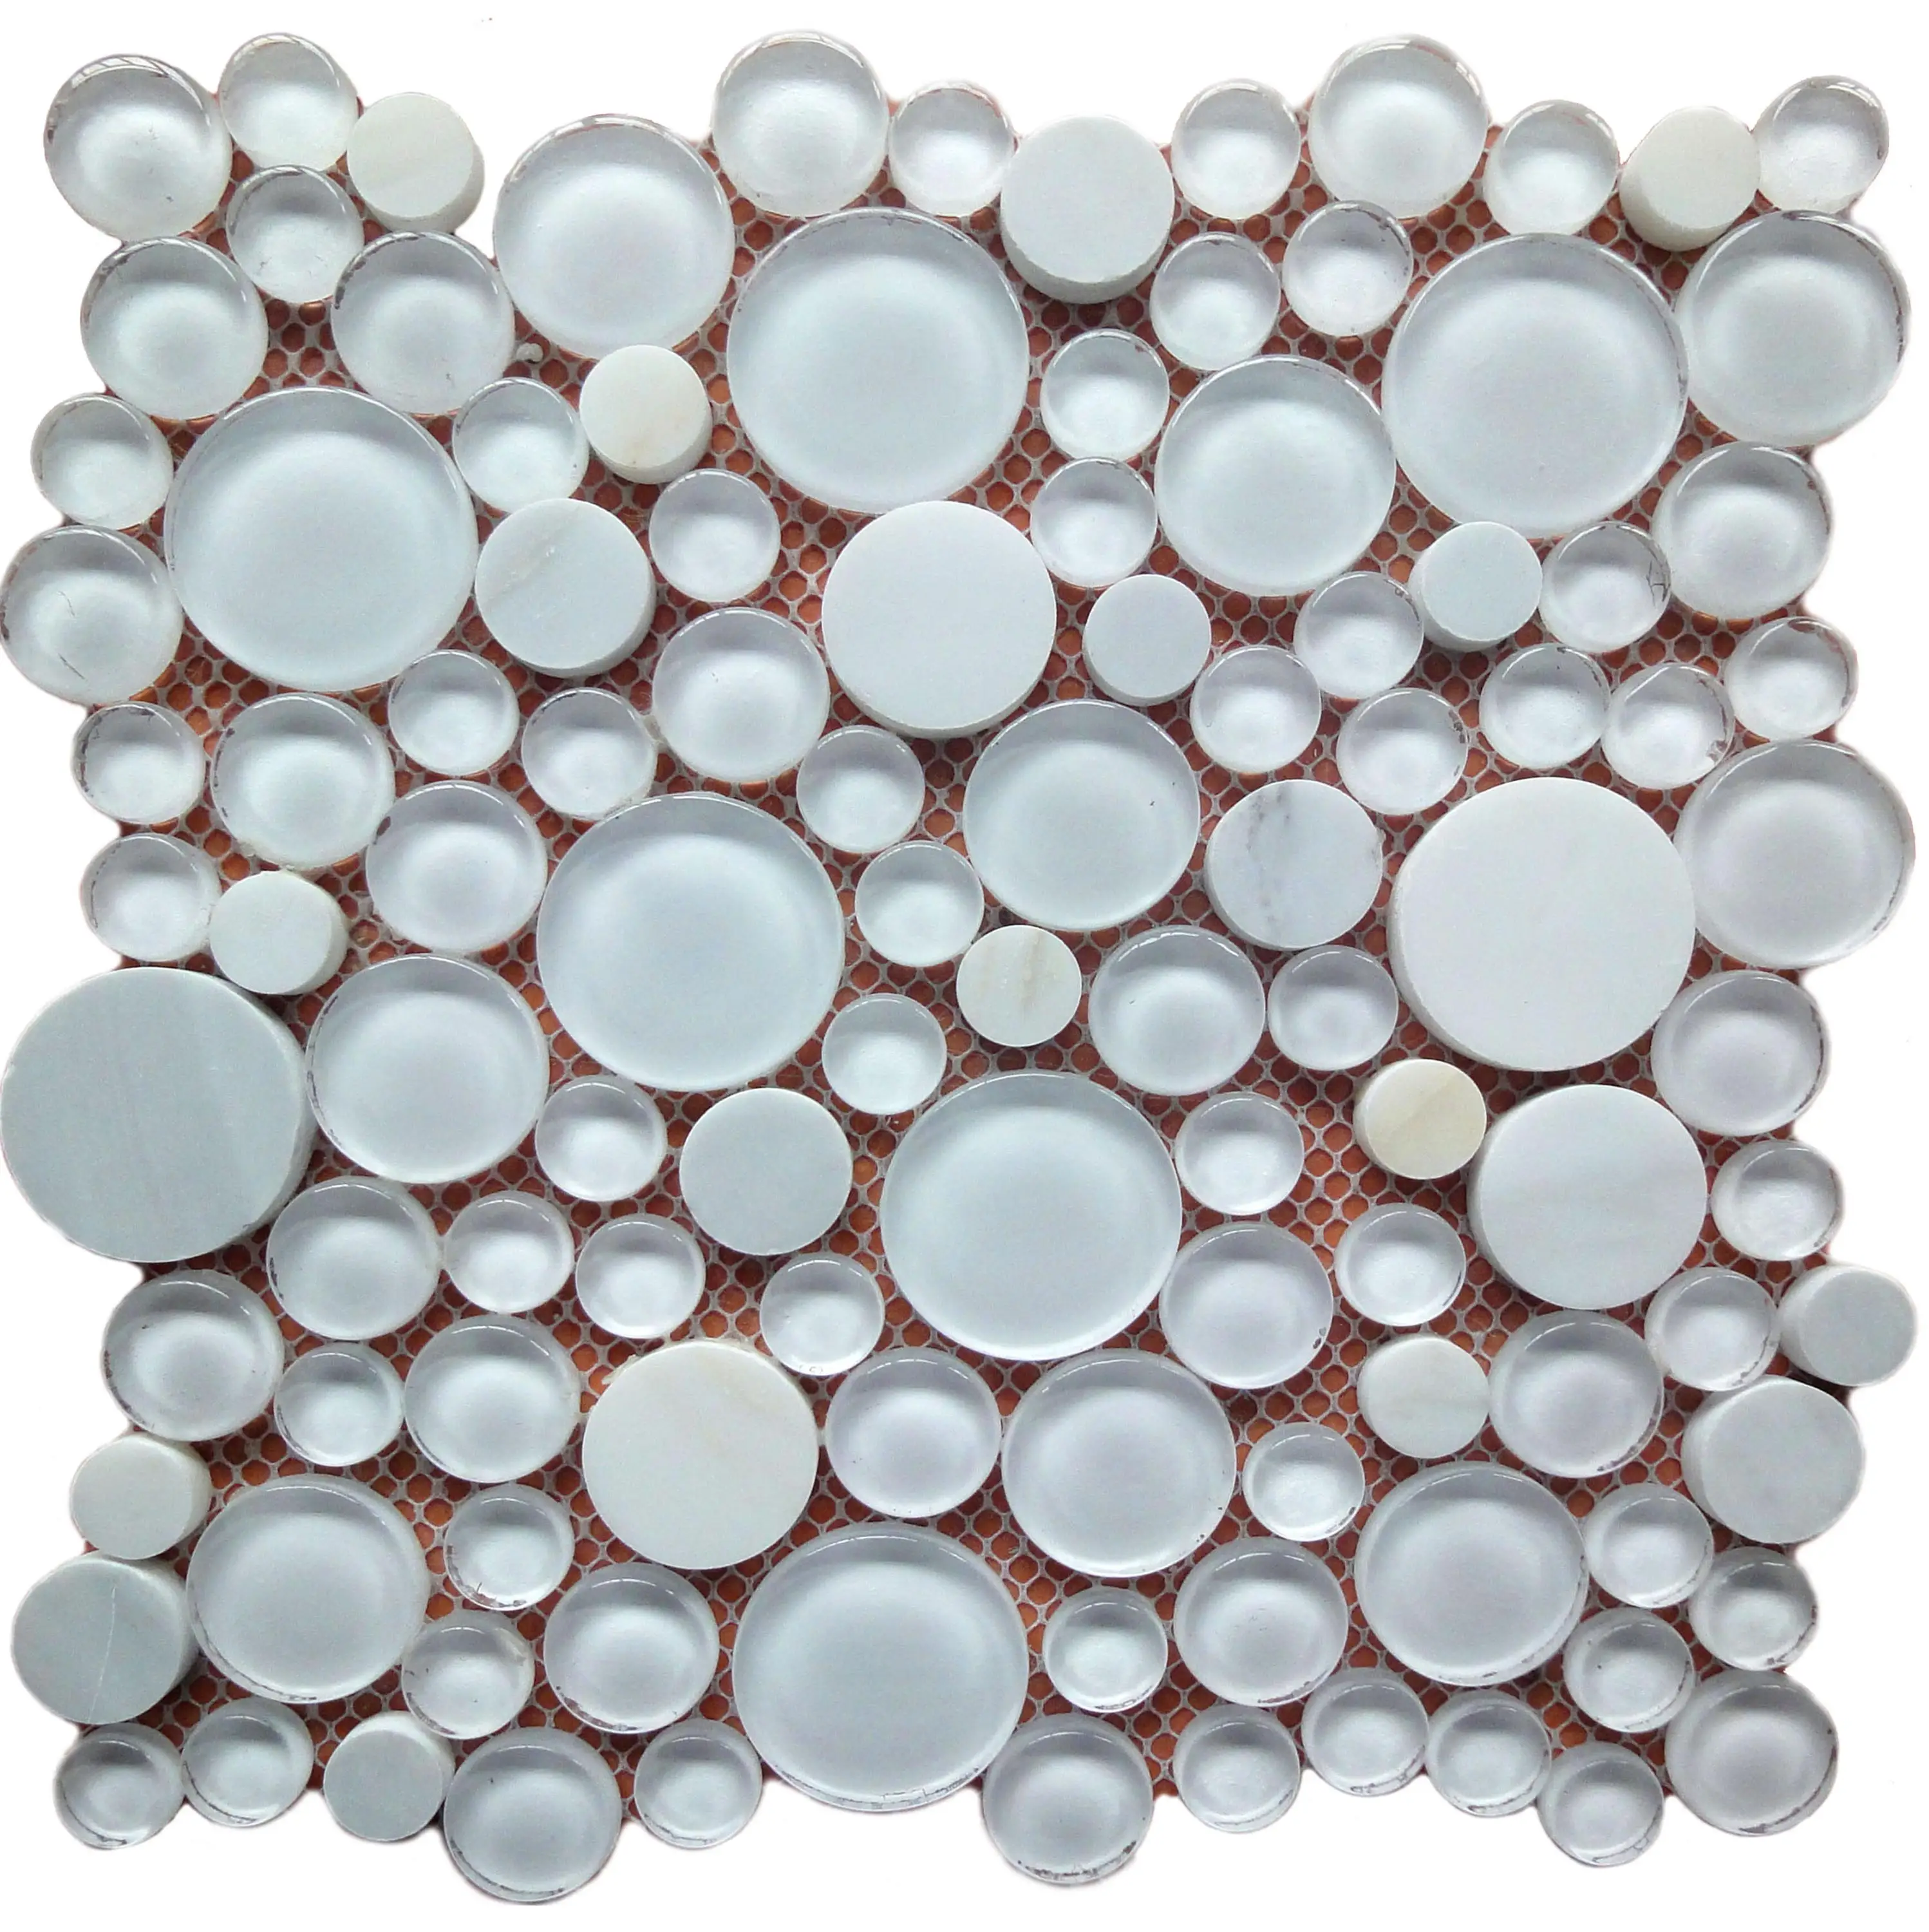 Milk White Stone Mix Glass Pebbles Mosaic Tiles Round Pebble Mosaic Medallion Floor Tile Patterns Glass Tile Pebble Mosaics